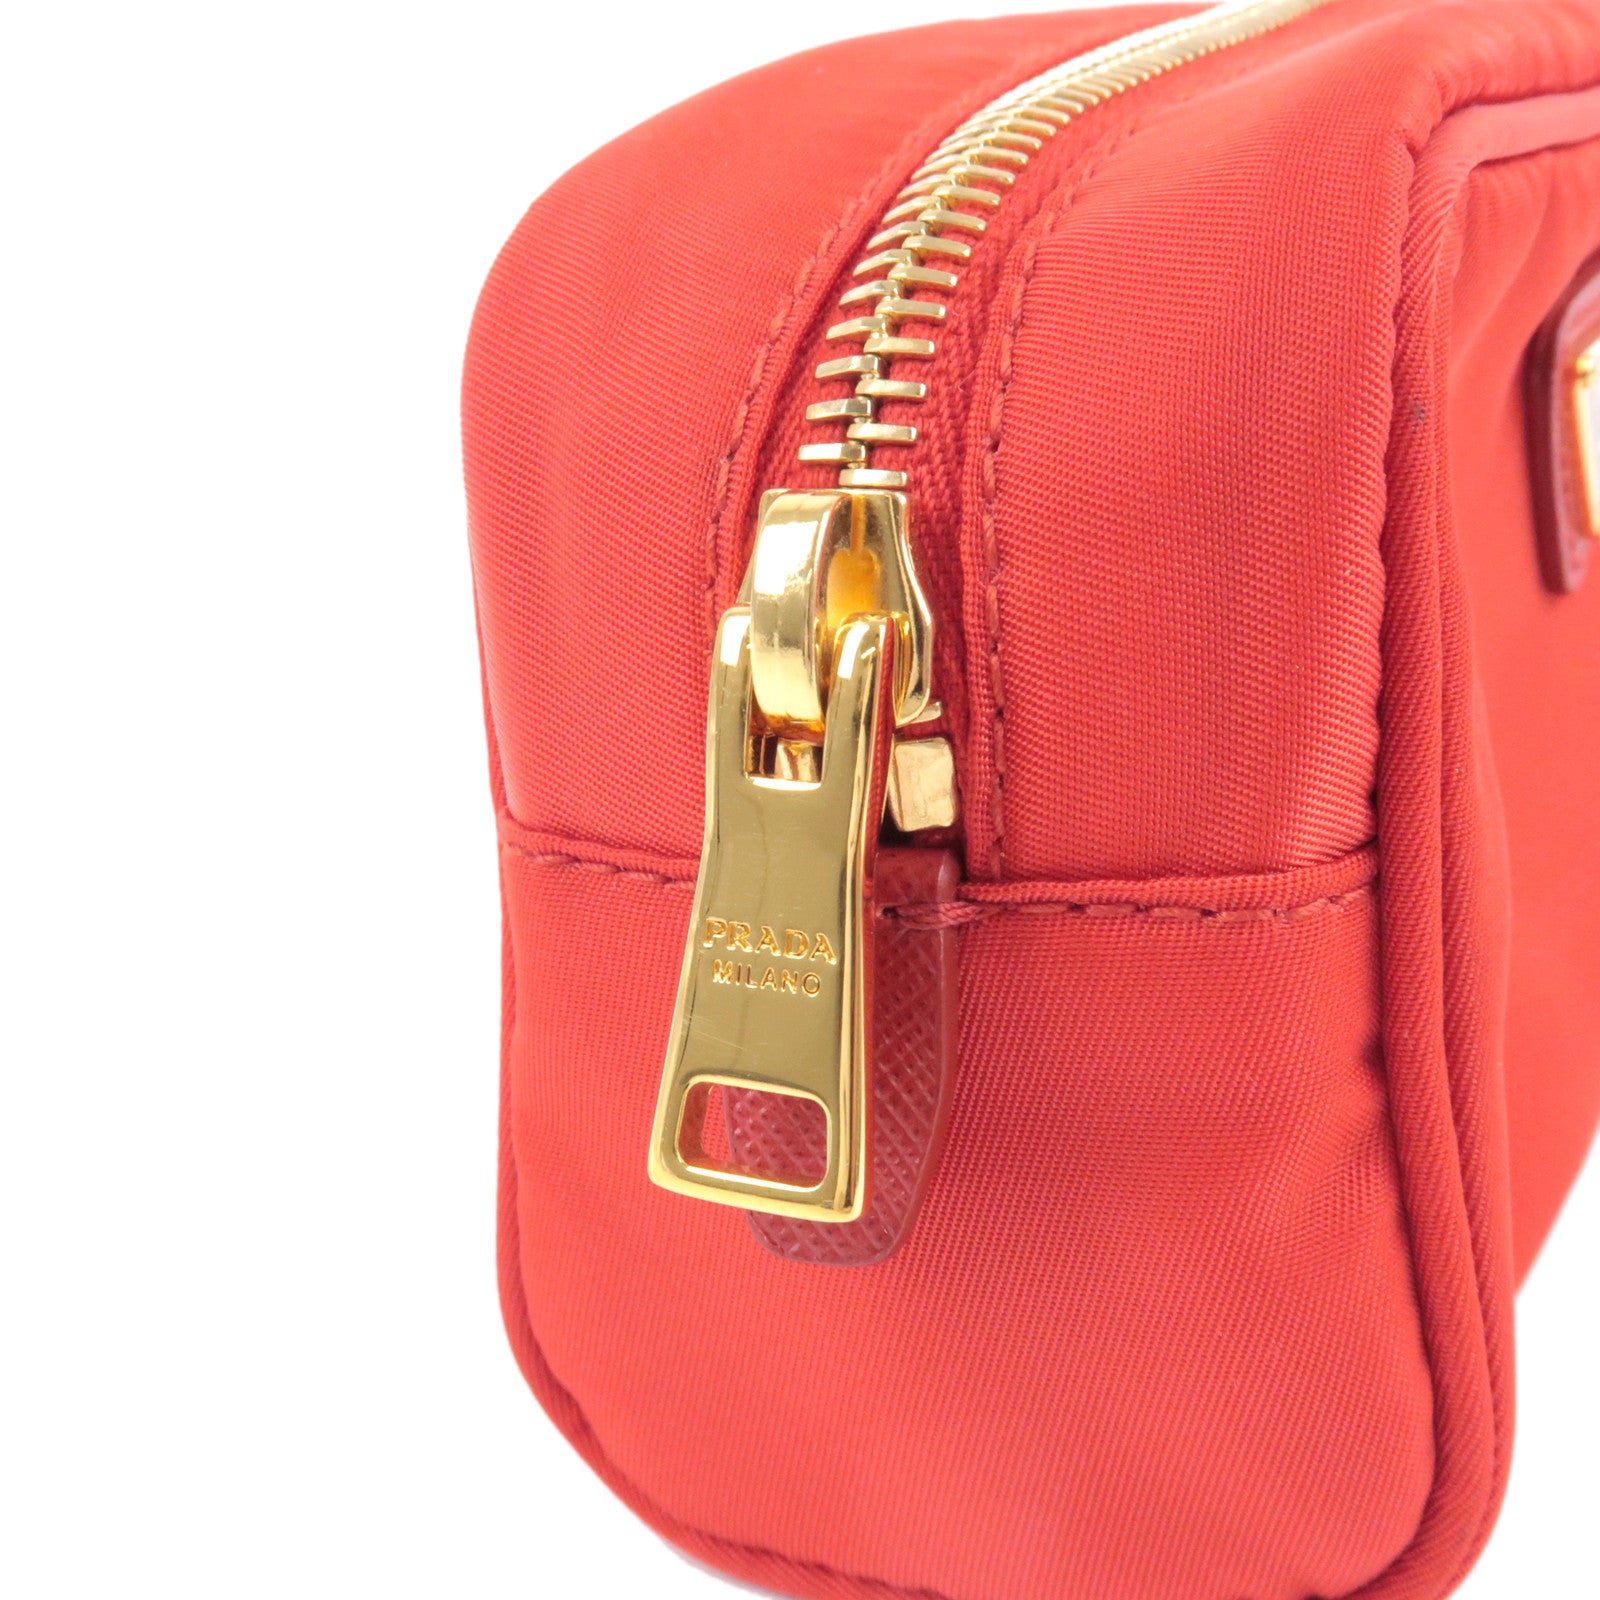 Prada Pionnière Web-strap Shoulder Bag, Red (rubino/granato) | ModeSens |  Bags, Shoulder bag, Purses